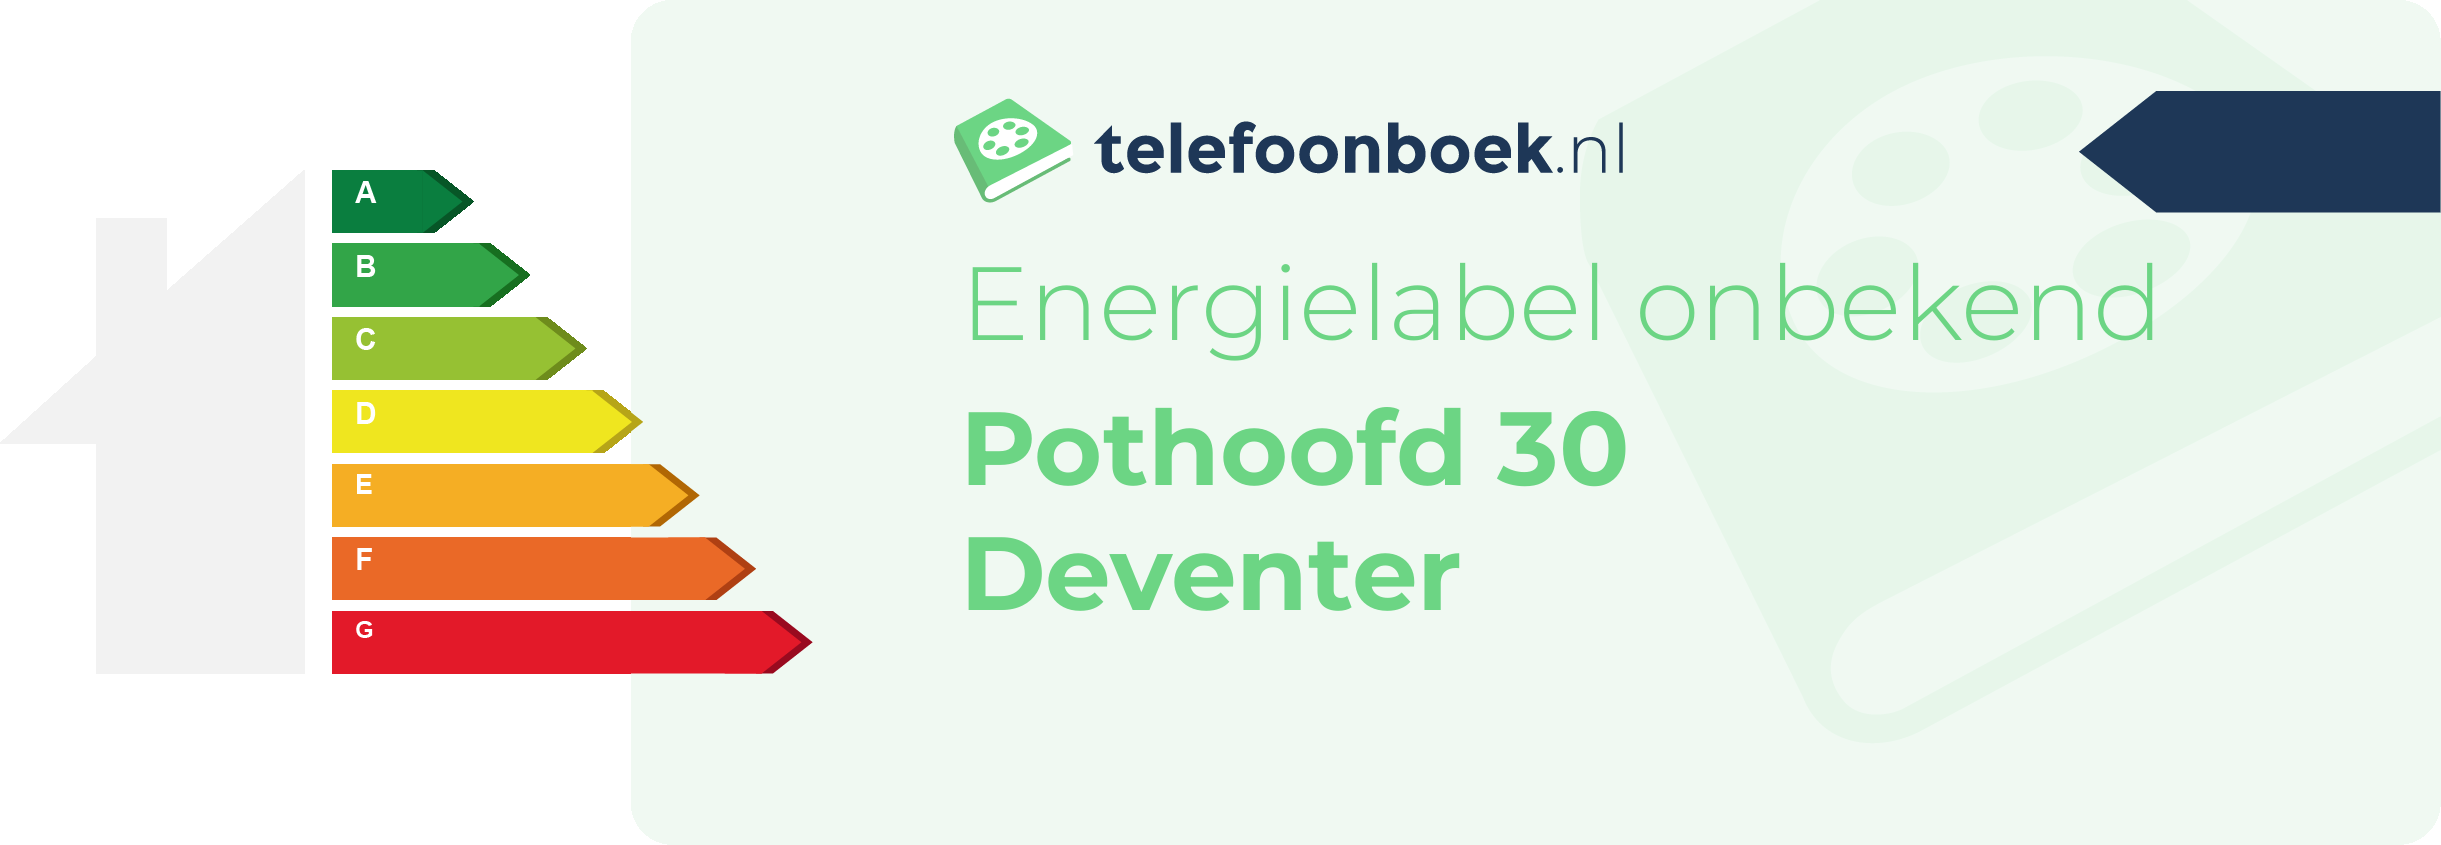 Energielabel Pothoofd 30 Deventer